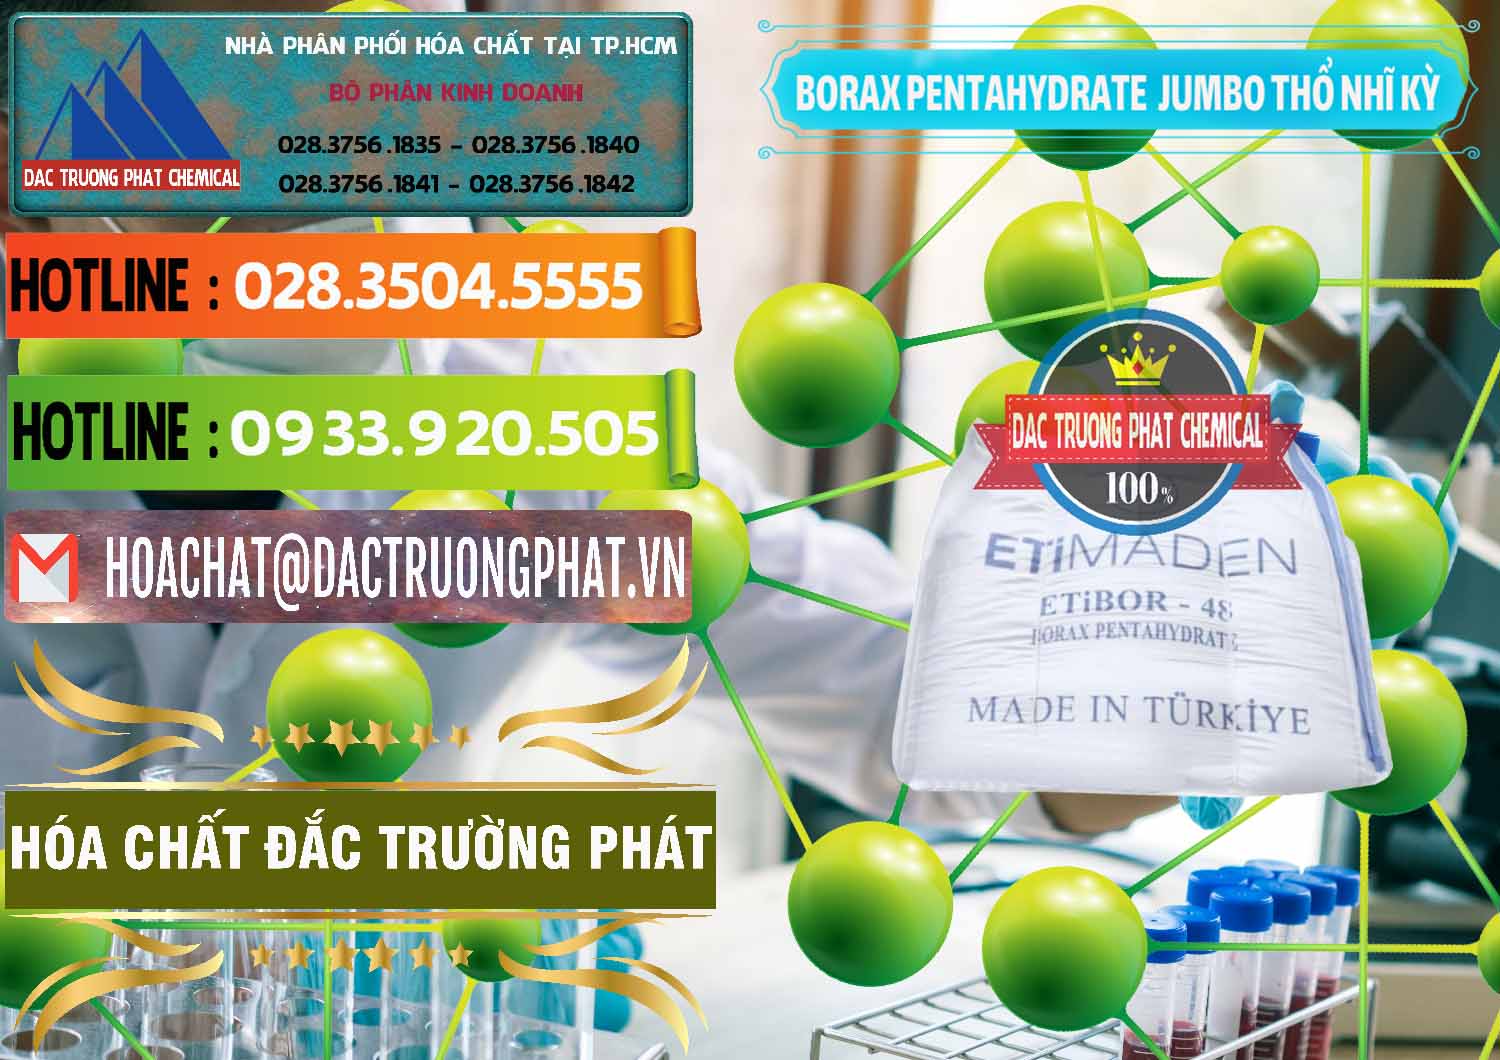 Công ty chuyên cung cấp và bán Borax Pentahydrate Bao Jumbo ( Bành ) Thổ Nhĩ Kỳ Turkey - 0424 - Cty chuyên phân phối ( cung ứng ) hóa chất tại TP.HCM - cungcaphoachat.com.vn